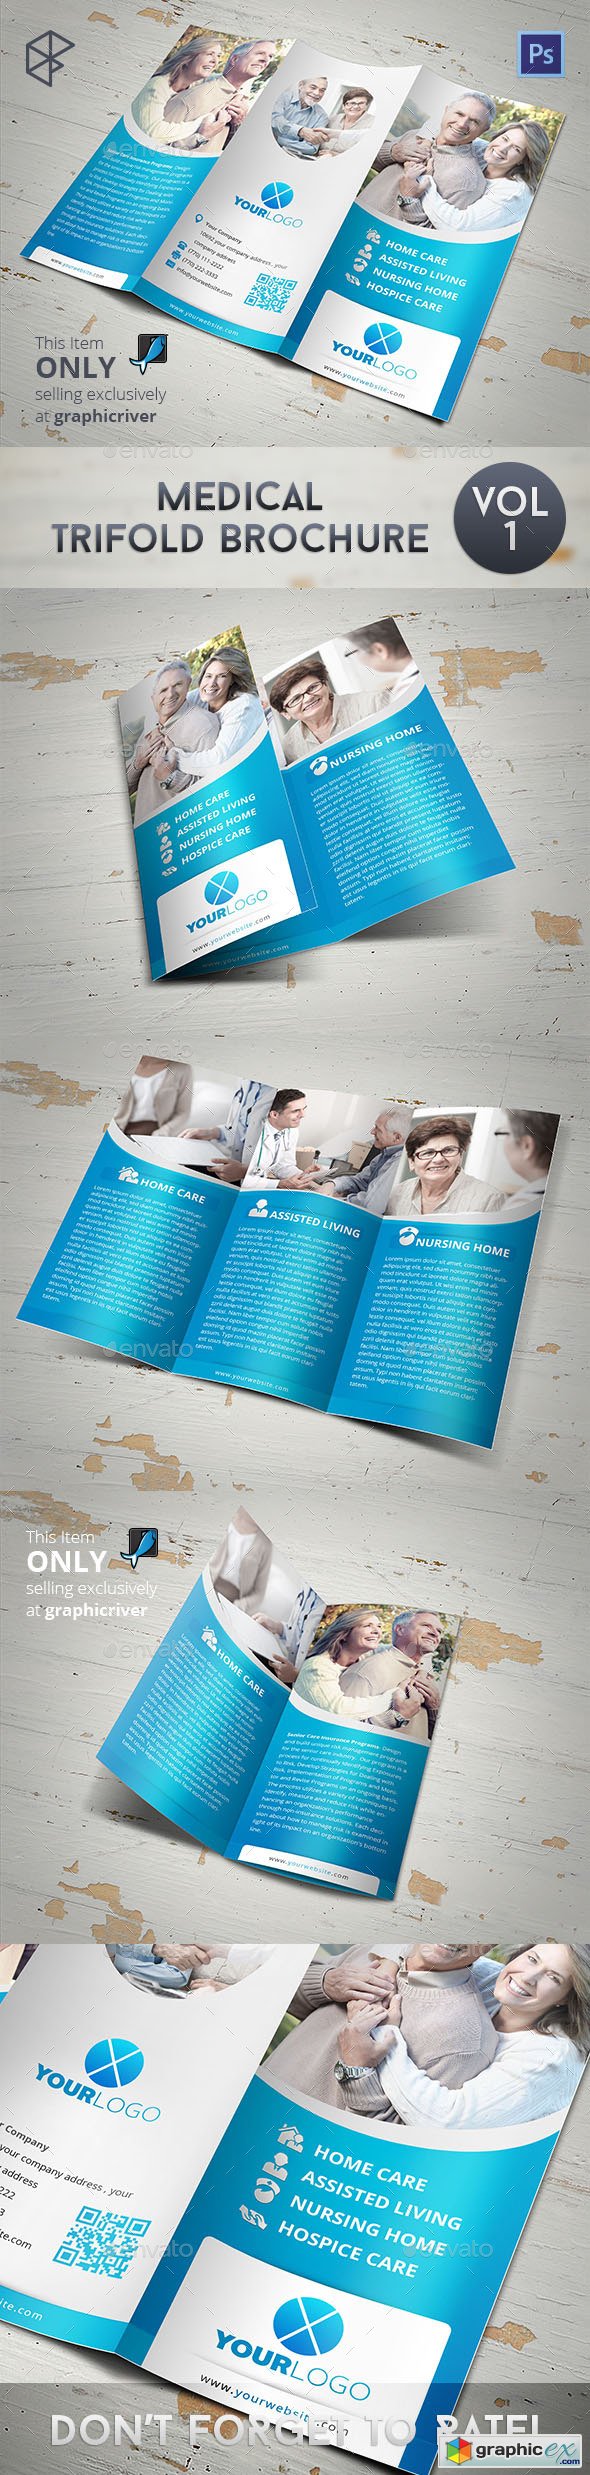 Medical Tri-fold Brochure 7828729